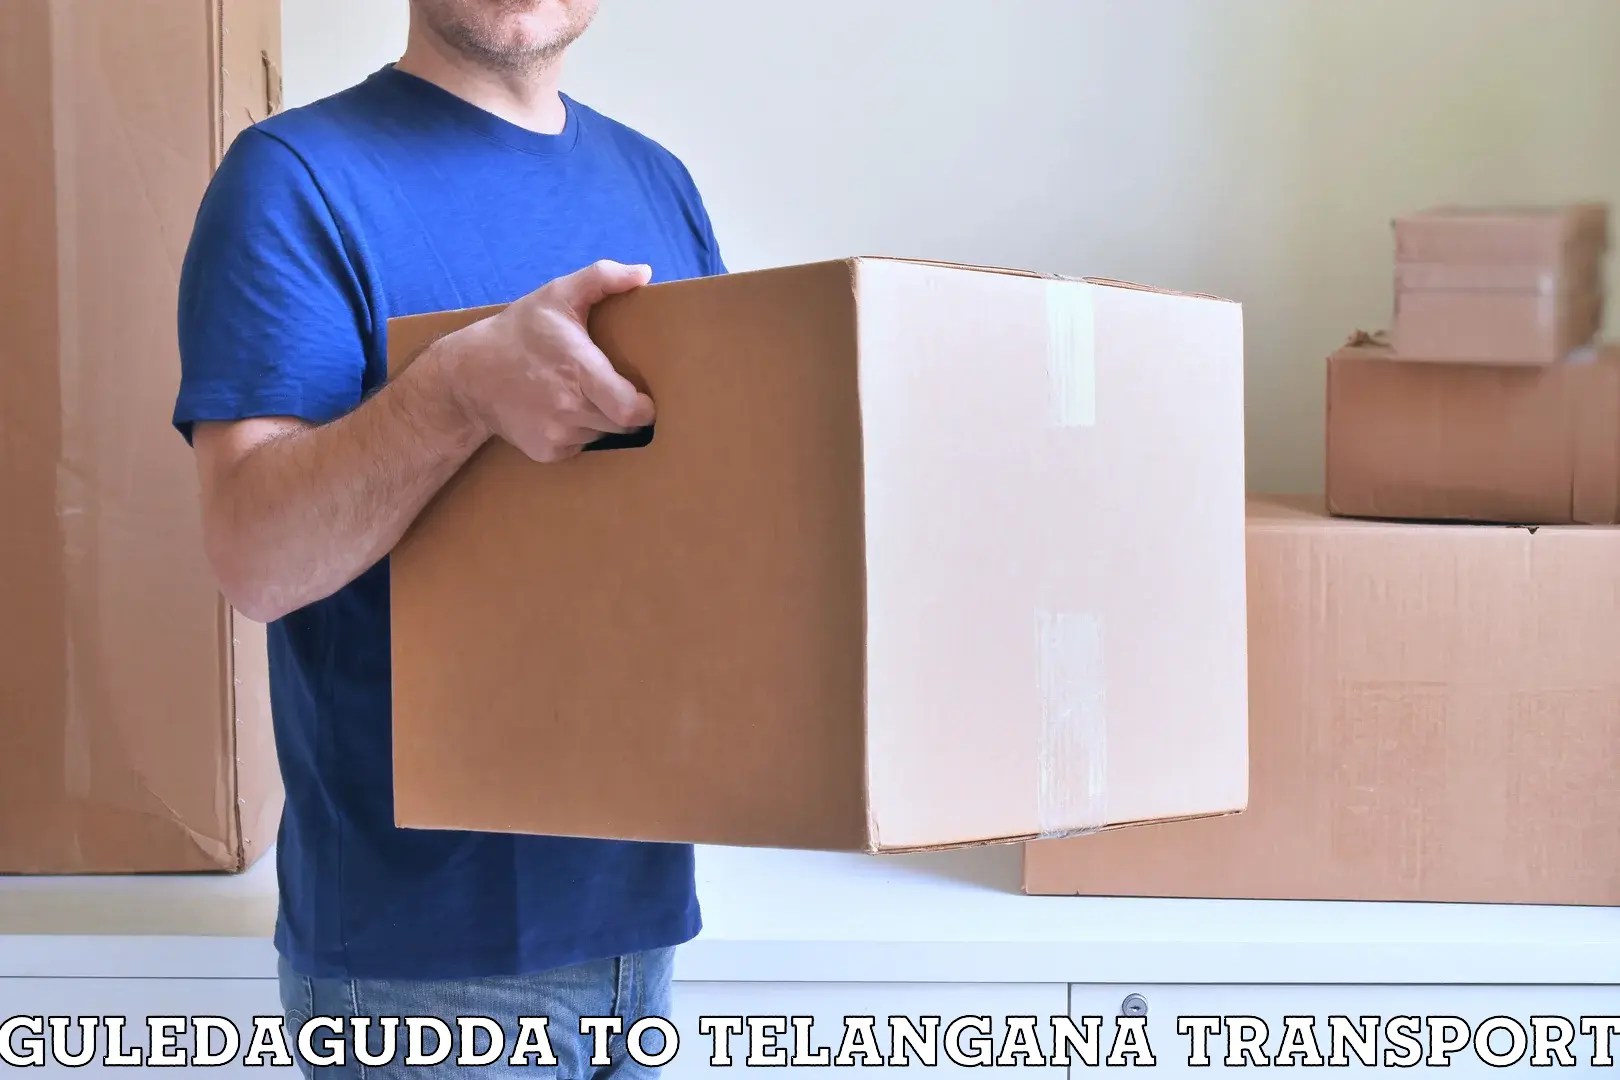 Pick up transport service Guledagudda to Haliya